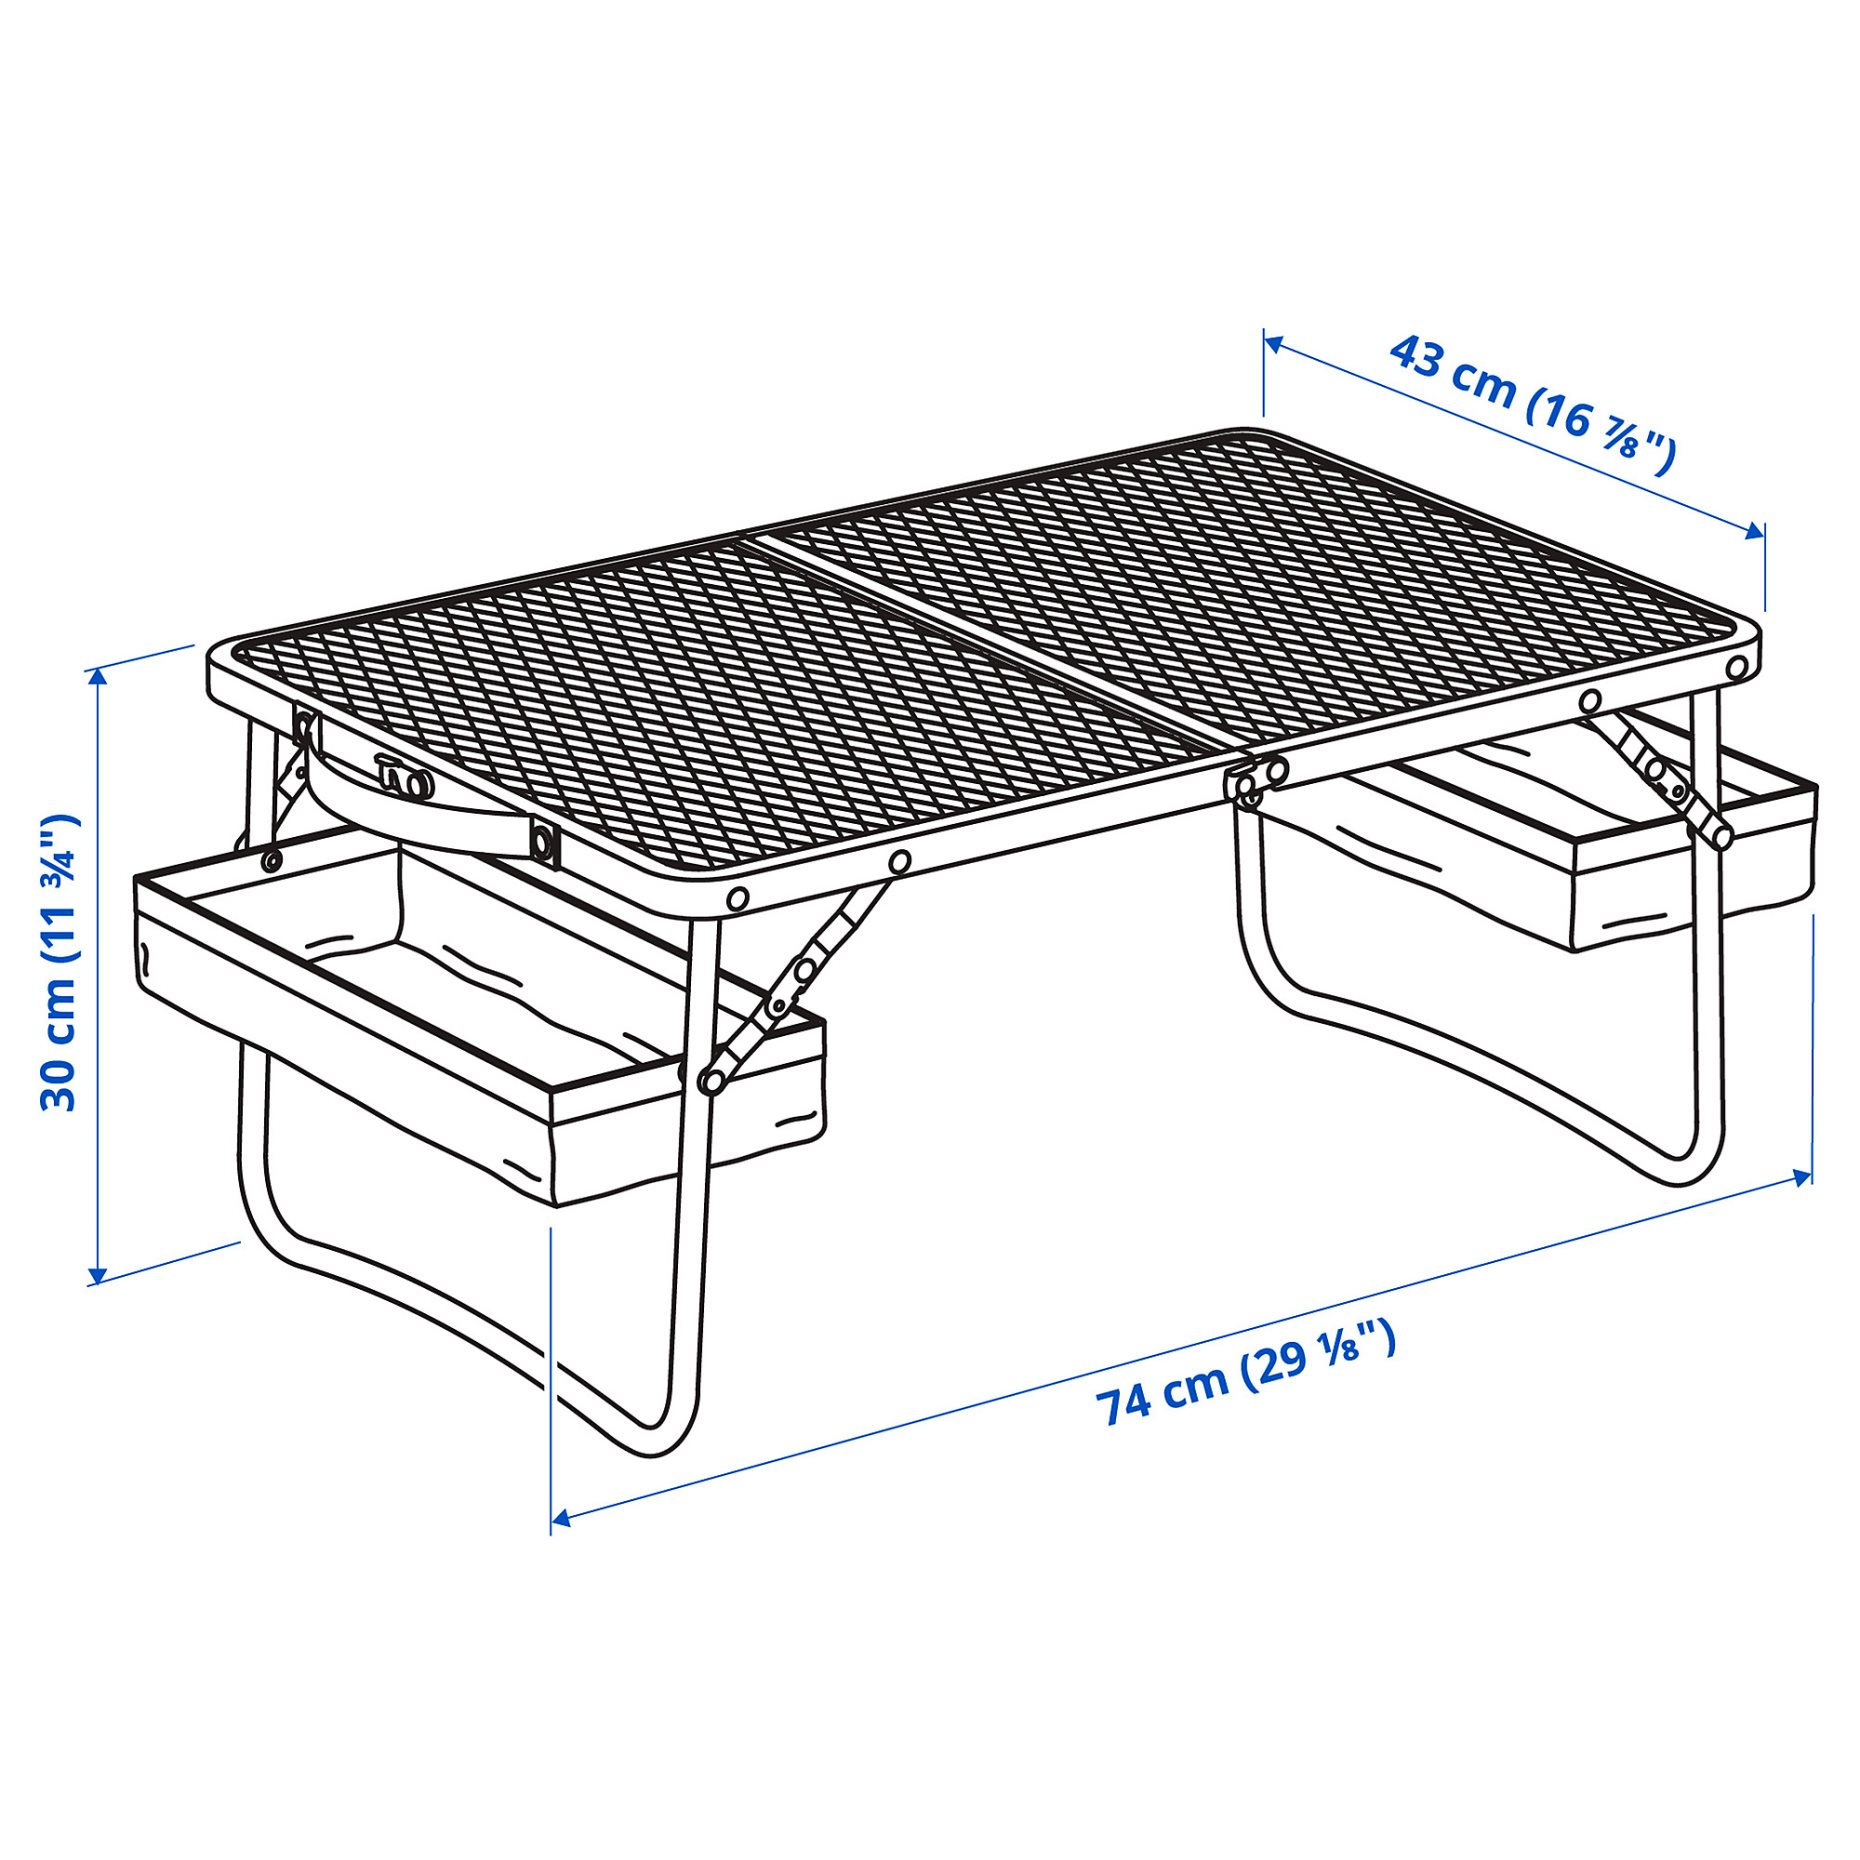 STRANDÖN, folding table, 74x43 cm, 205.758.36